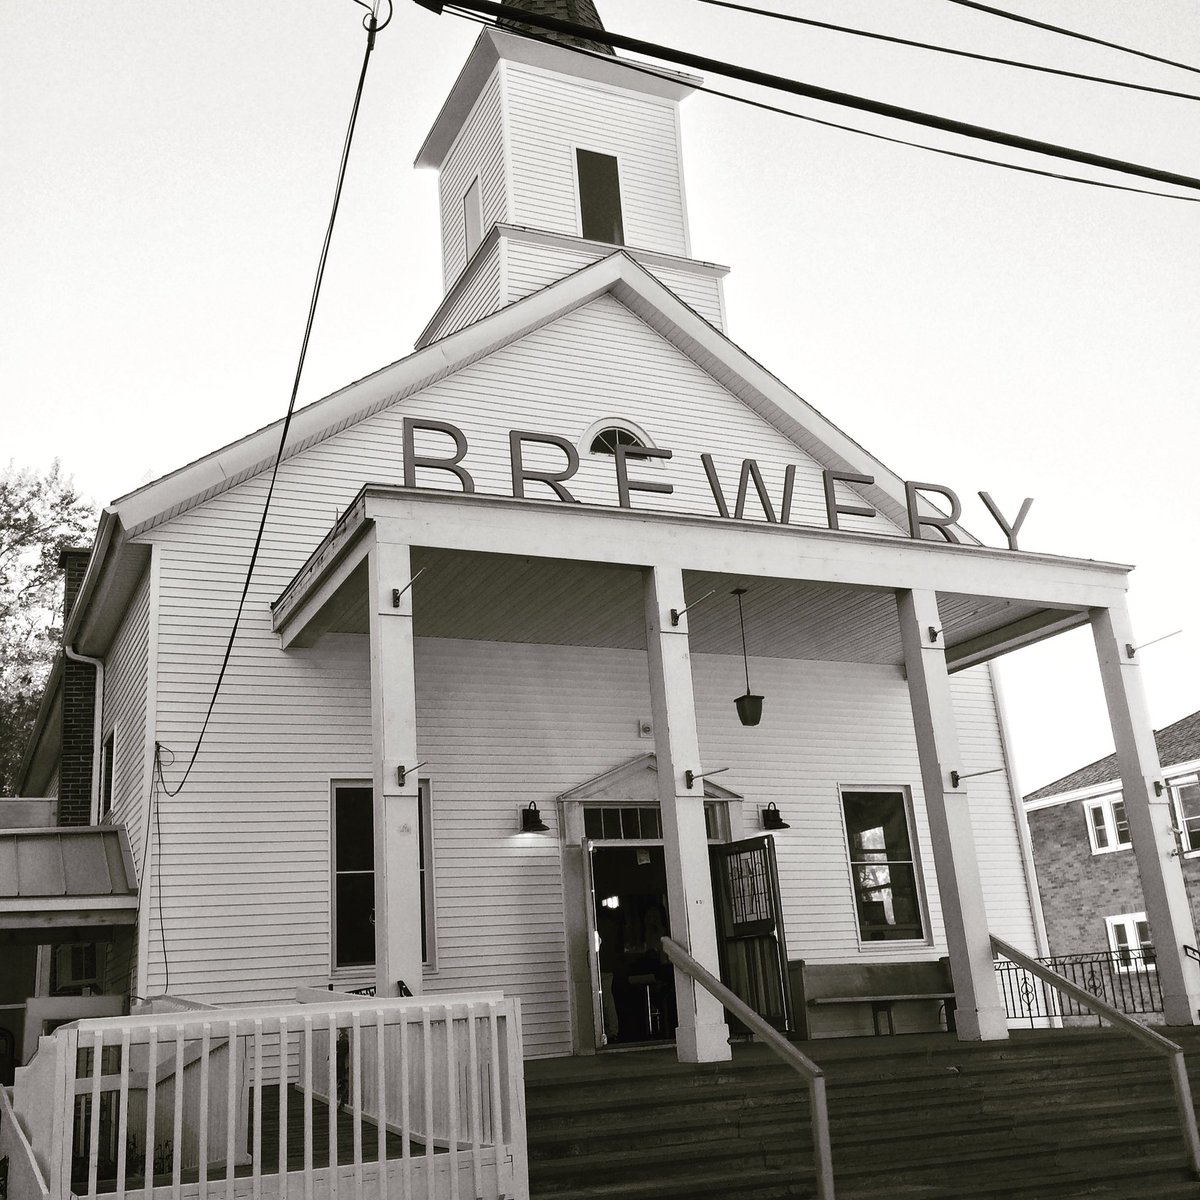 Get your ass to church. #NewBuffalo #BeerChurch